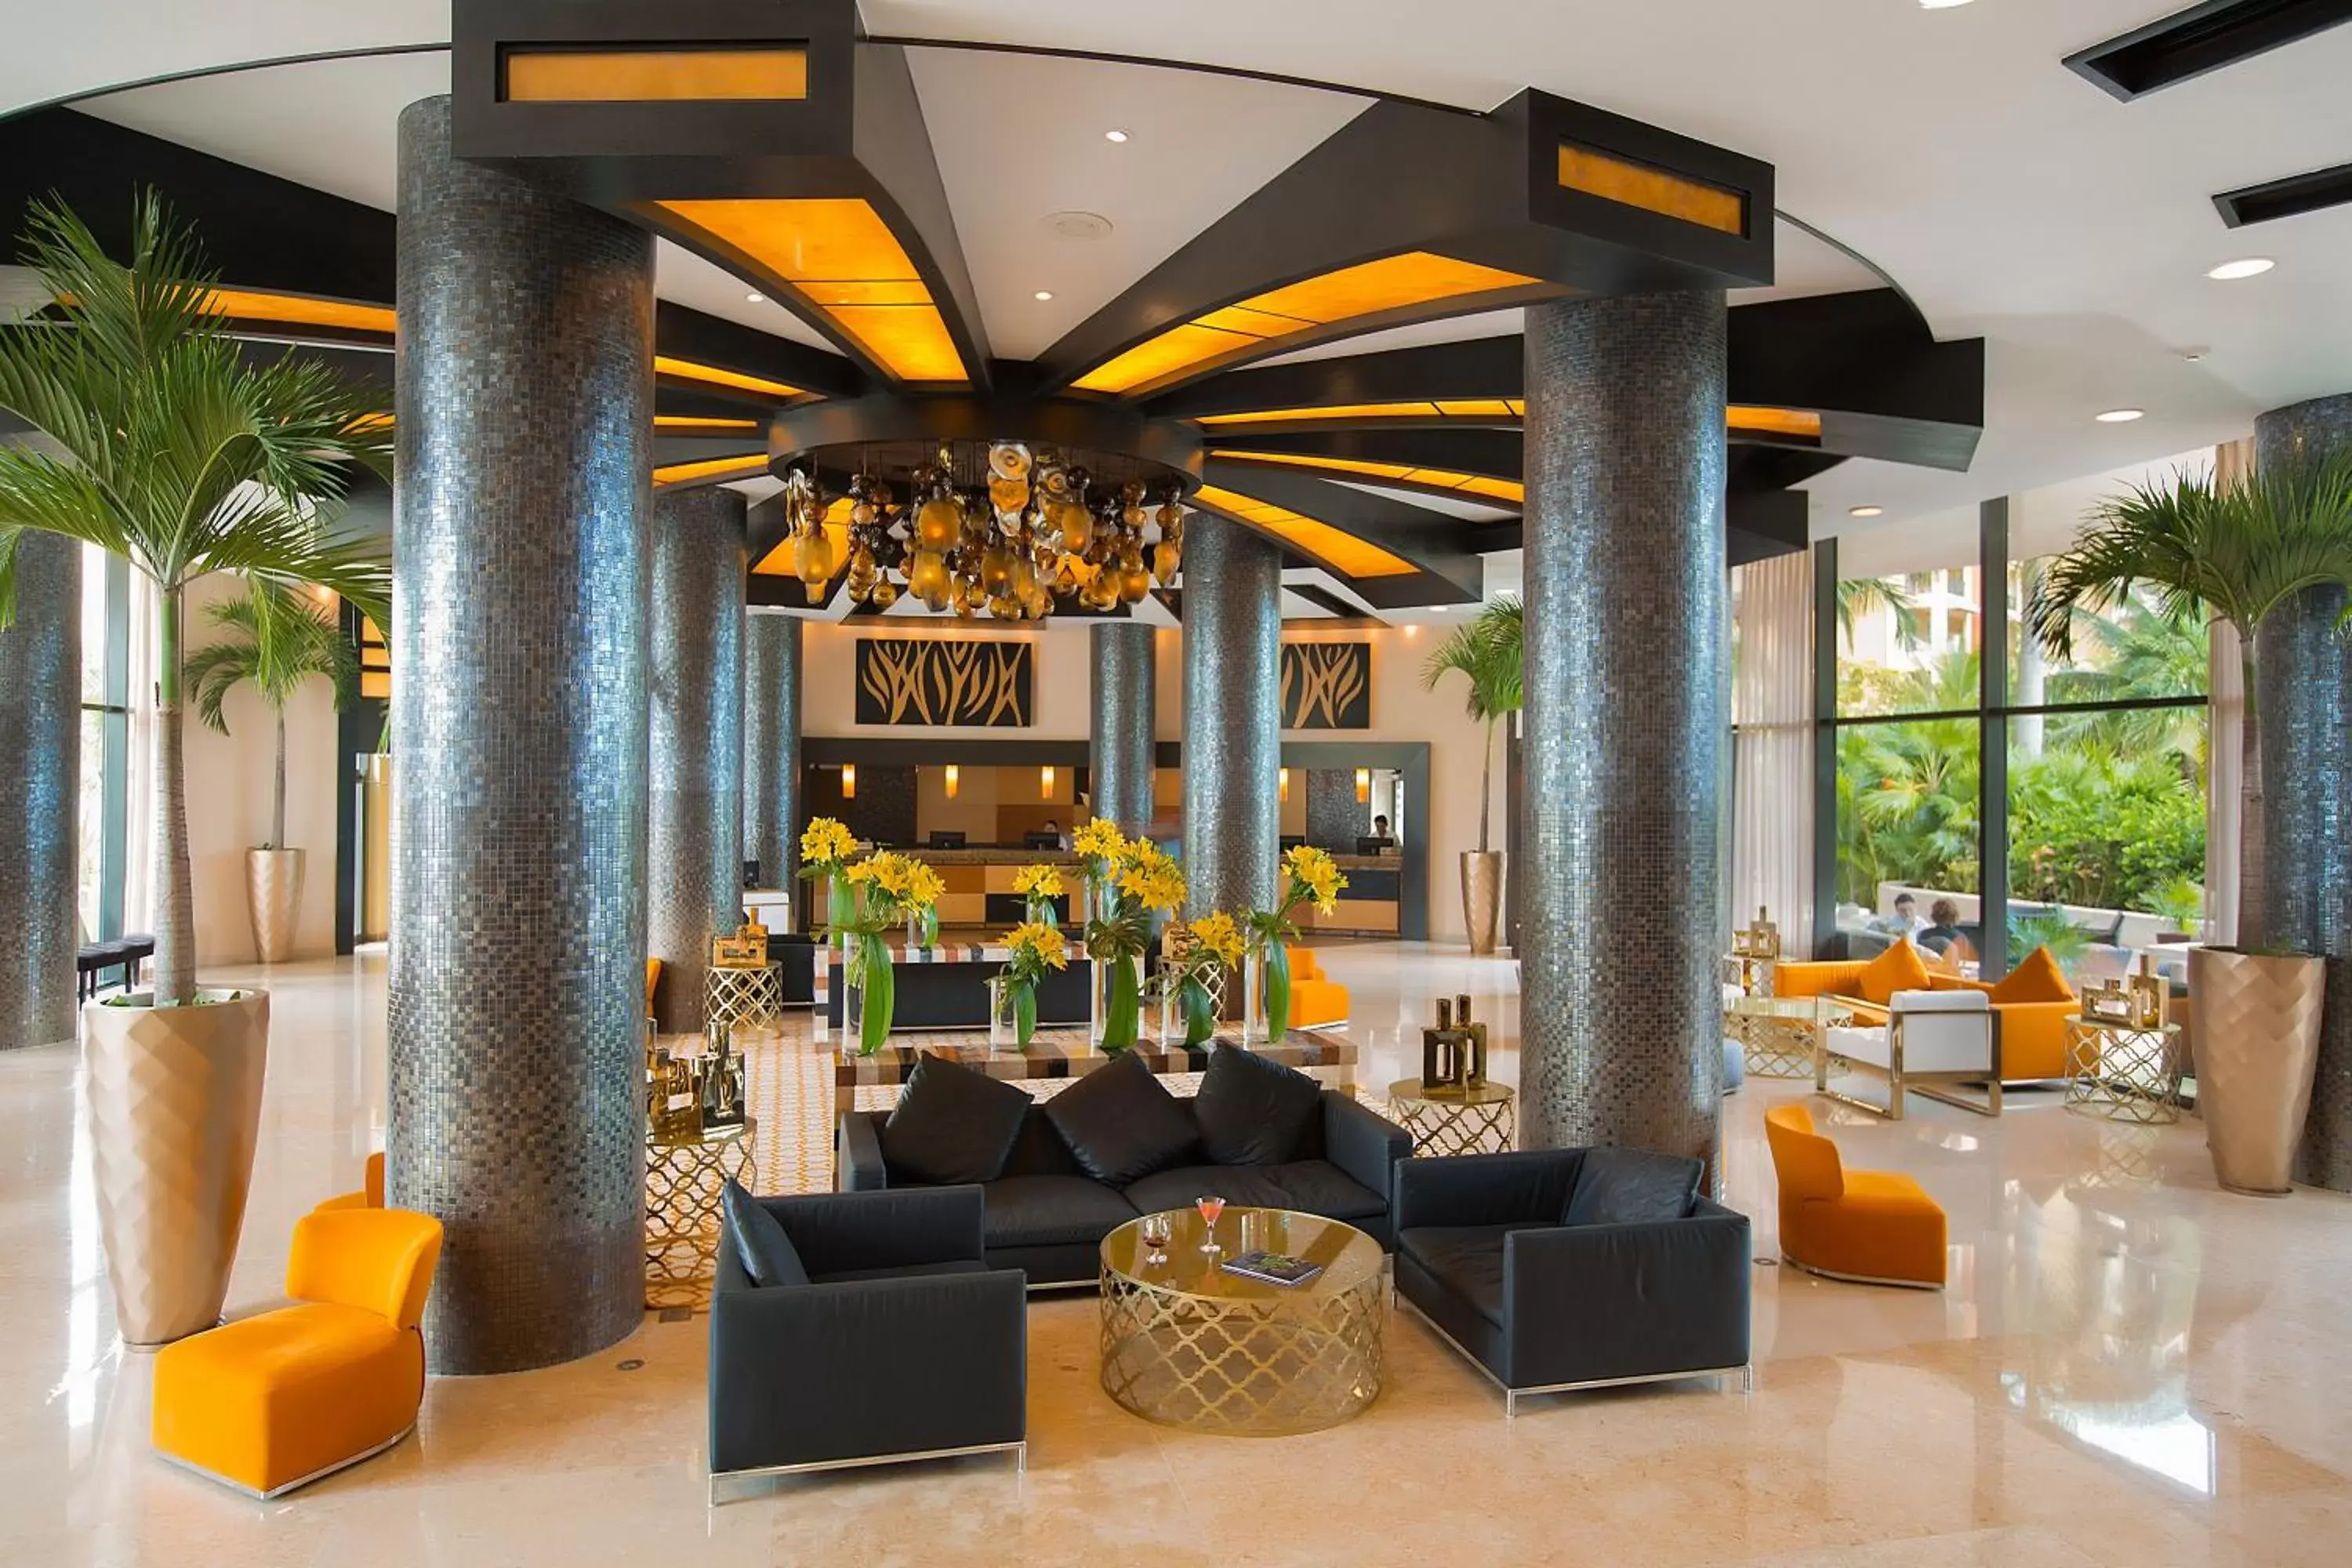 Lobby or reception in Villa del Palmar Cancun Luxury Beach Resort & Spa